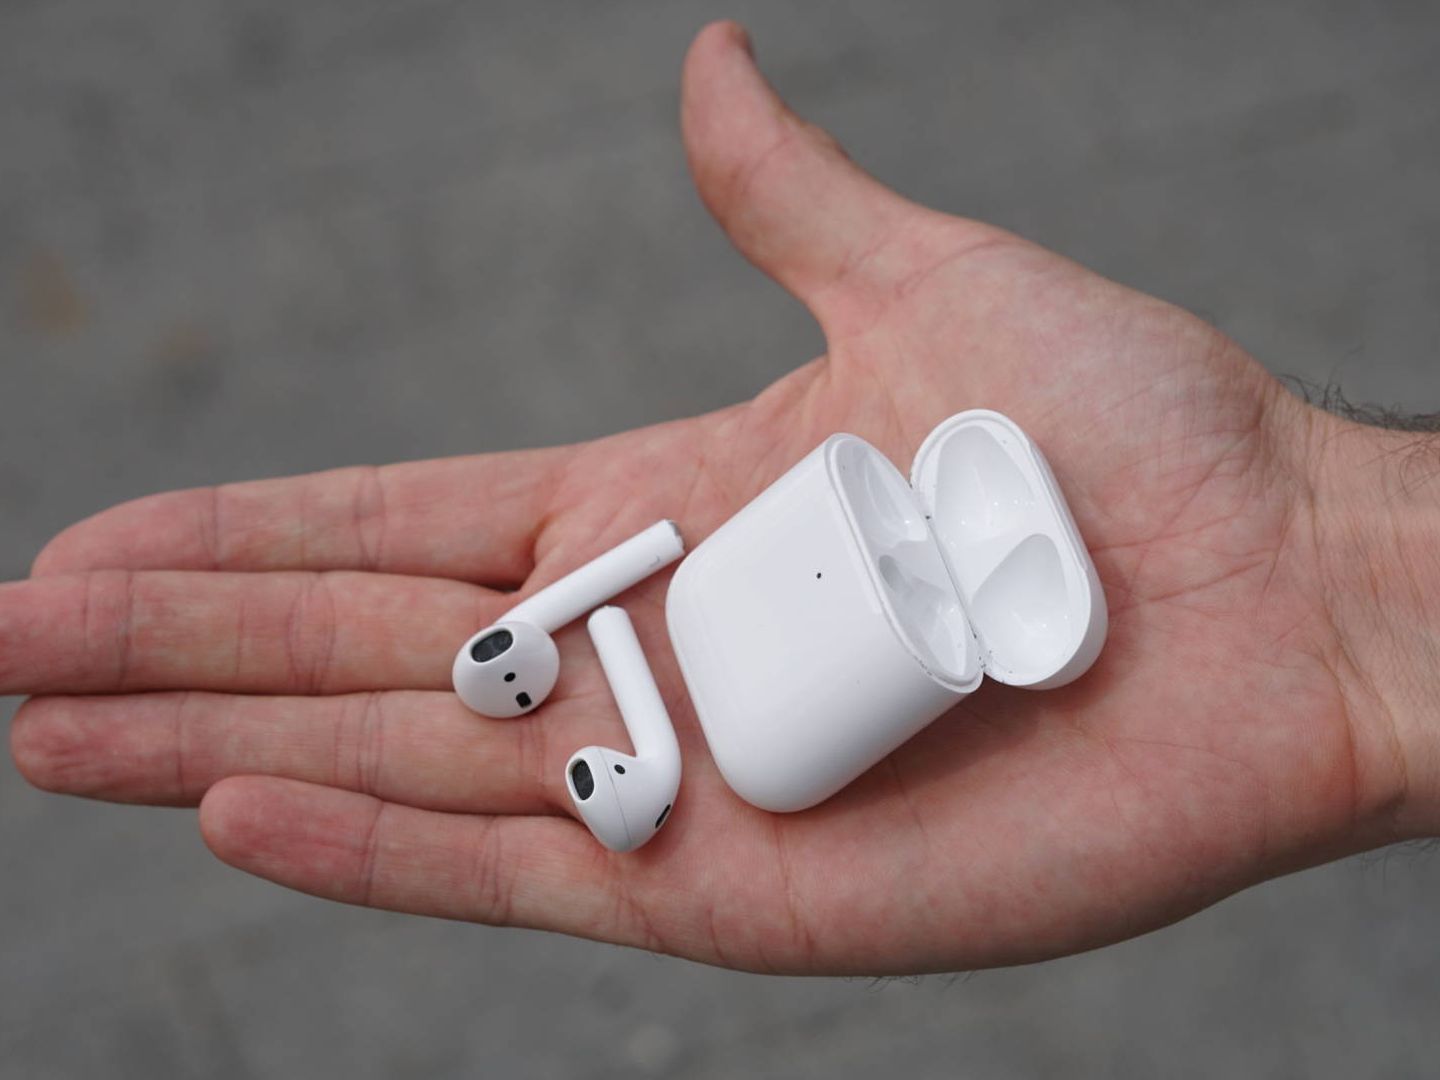 Los auriculares de Xiaomi que buscan hacerle sombra a los Airpods de Apple